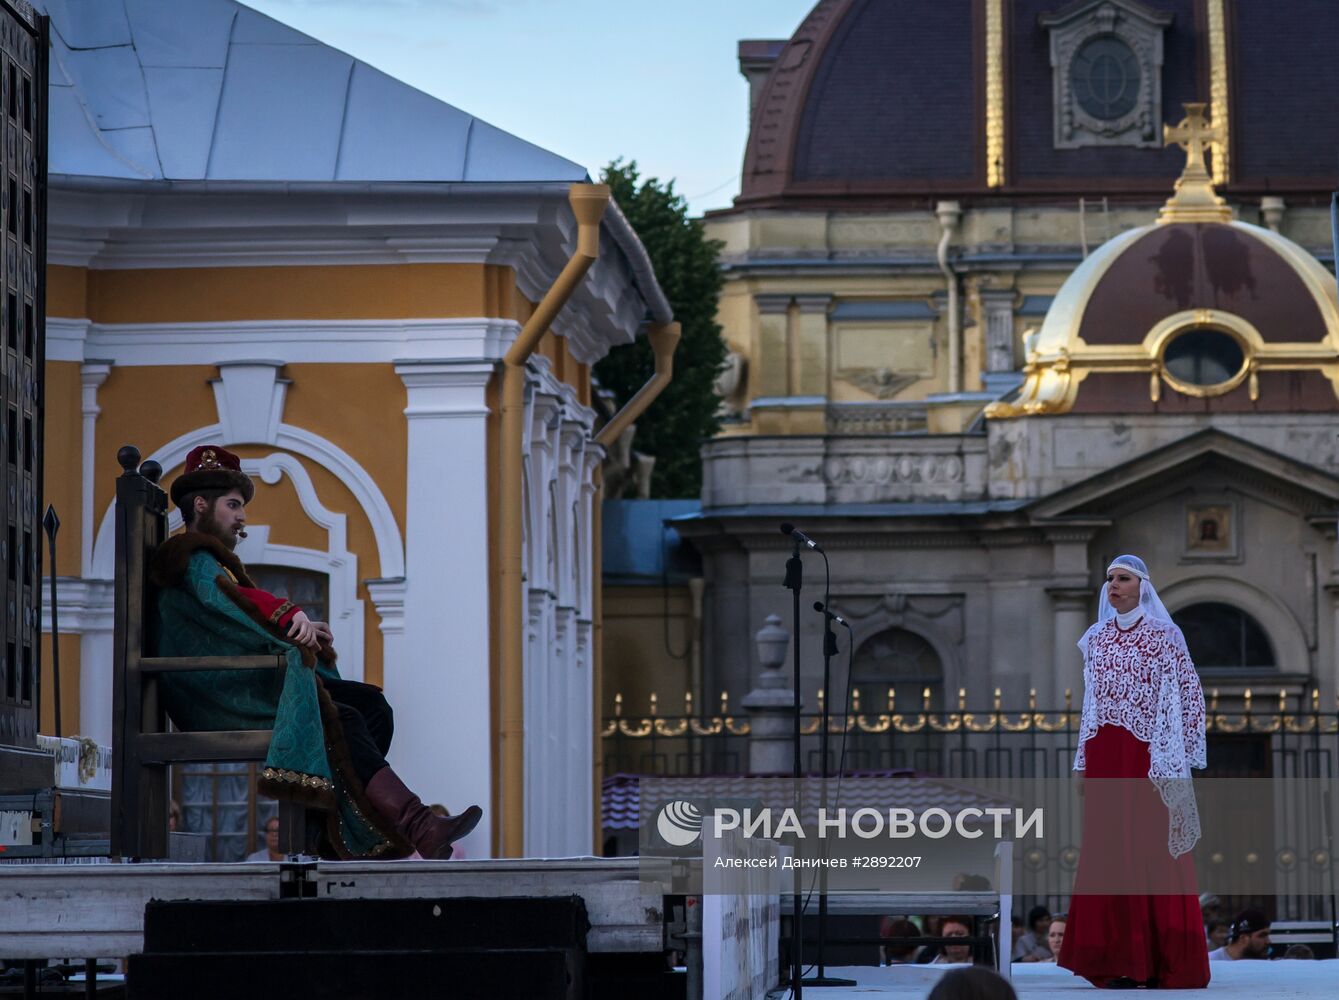 Опера "Князь Игорь" в рамках фестиваля "Опера-Всем"